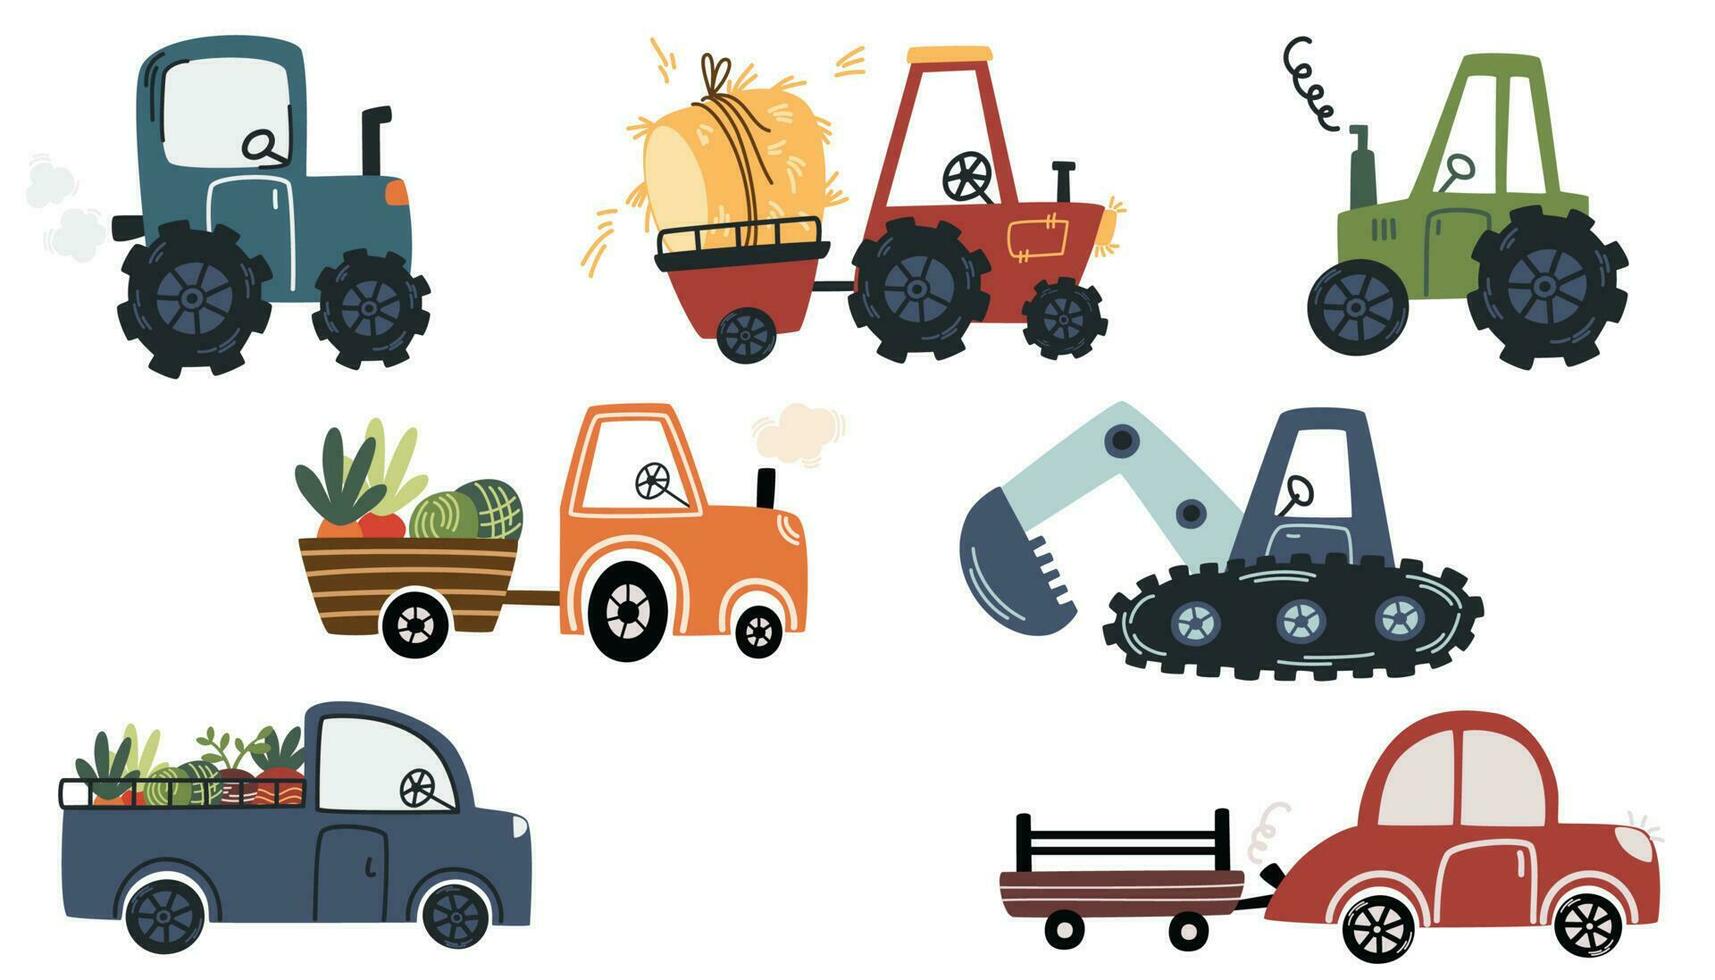 agrícola tractores granja carros, industrial tractor, combinar segador, segador, plumero, siembra máquina para transporte. vehículo para campo agrícola trabajar. dibujos animados vector ilustración